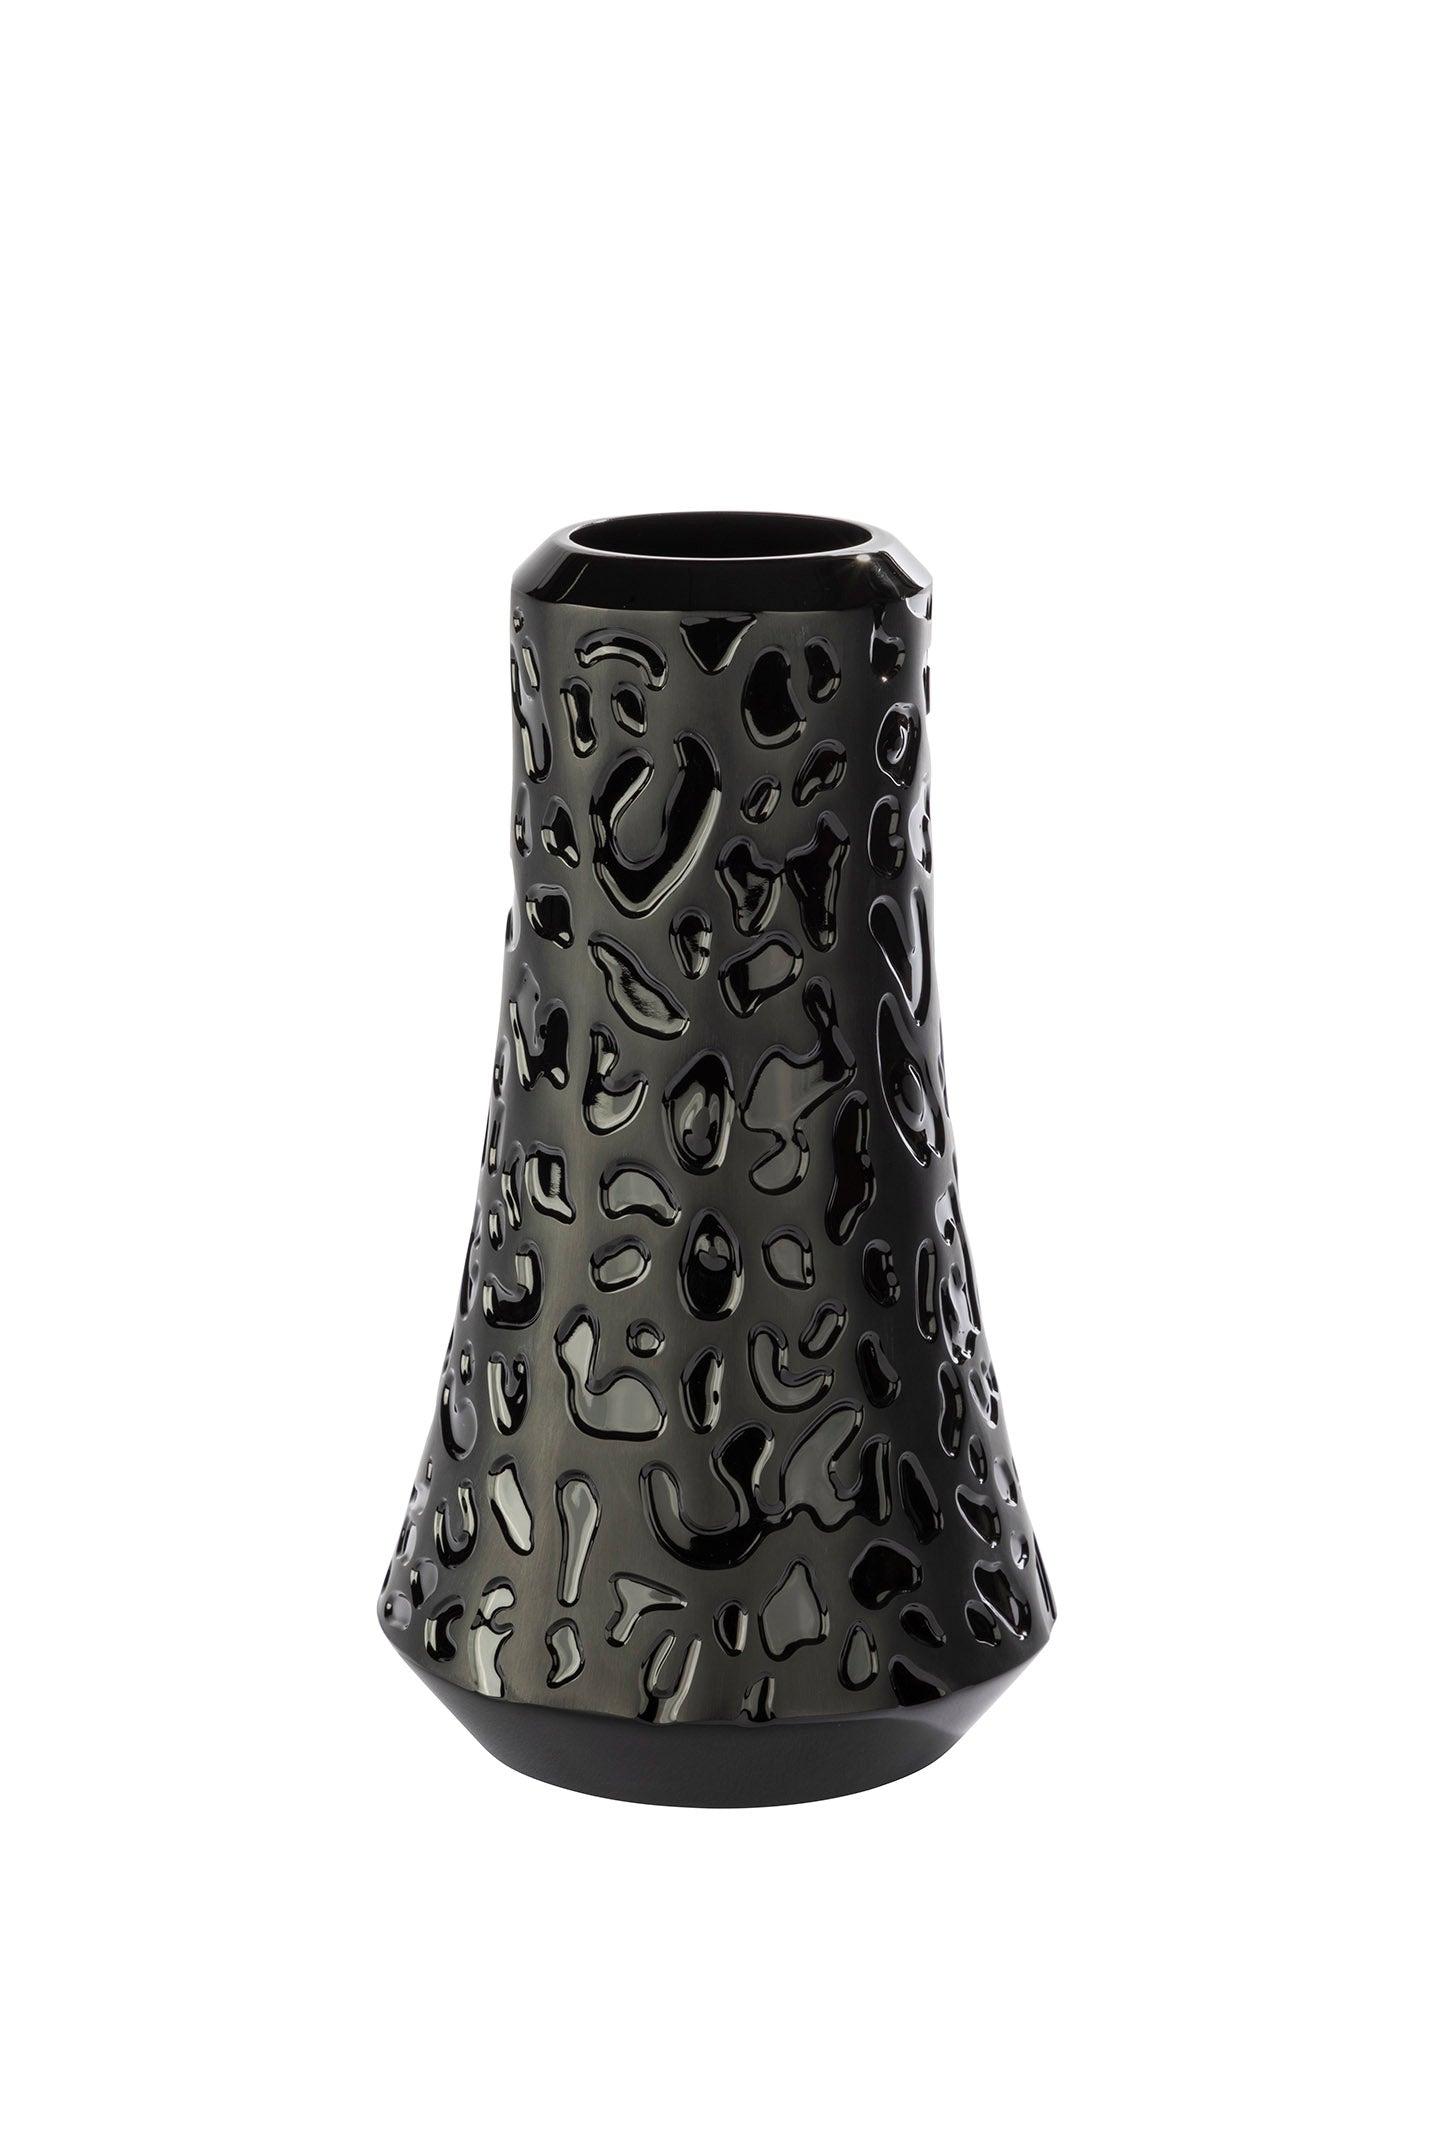 Panther Vase